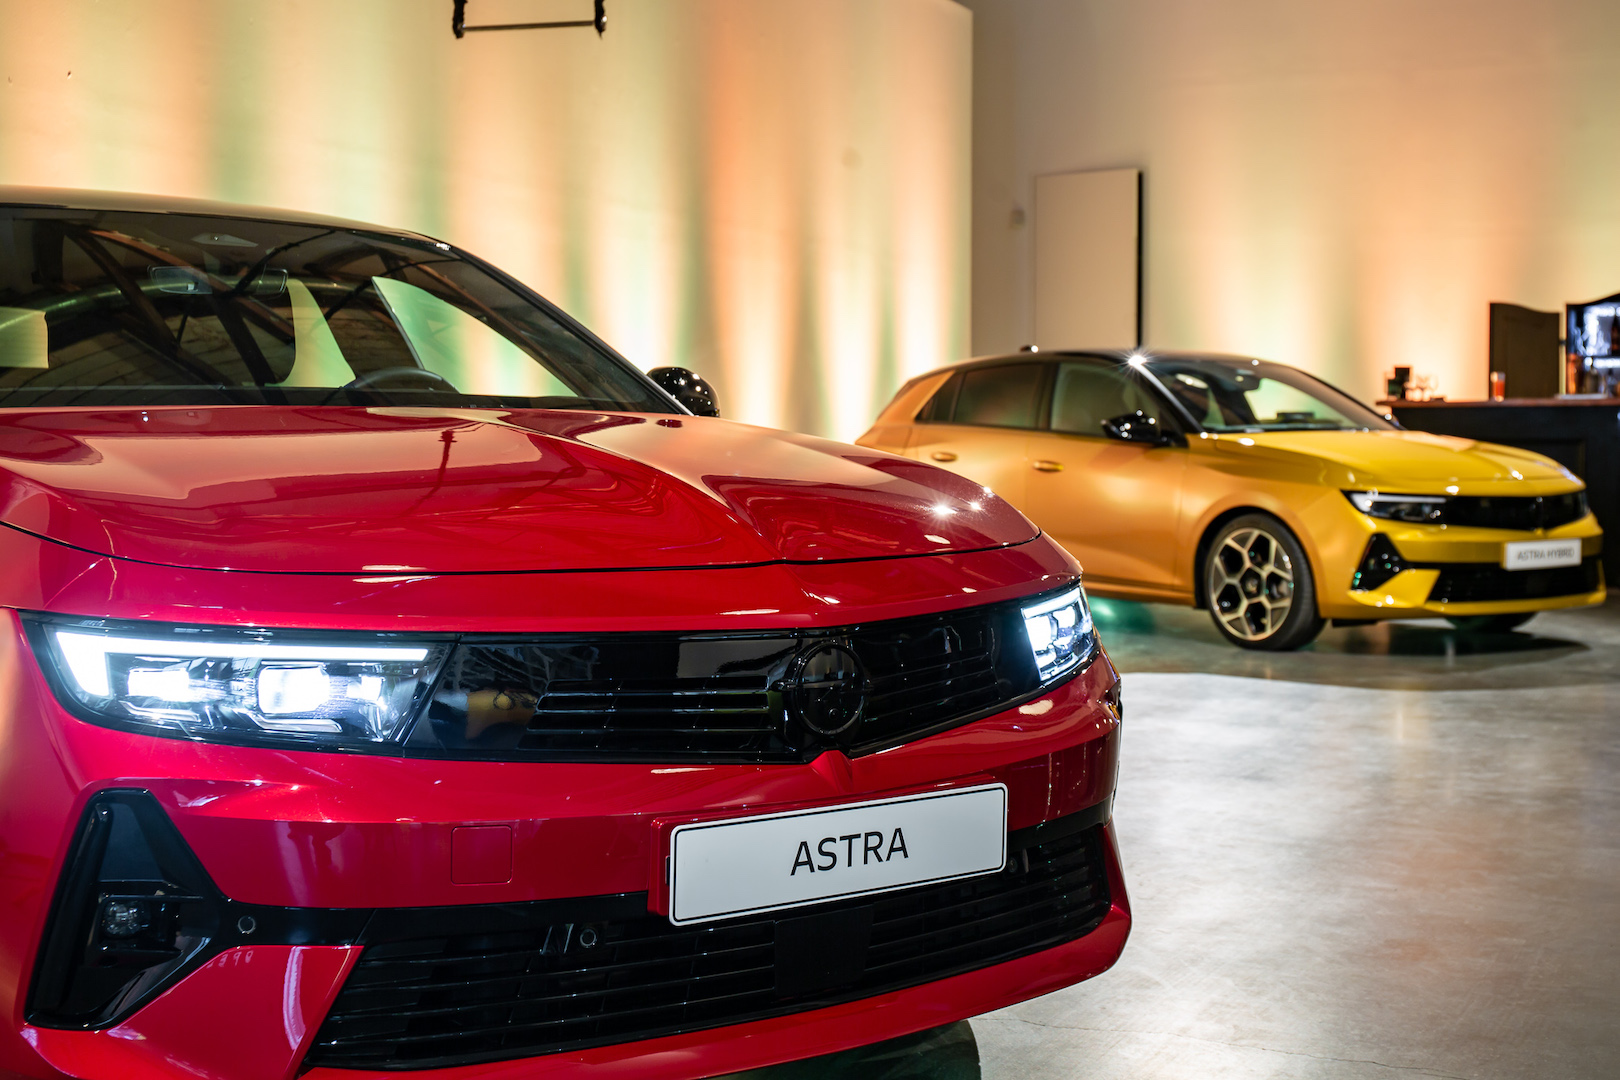 La nuova Opel Astra arriva in Repubblica Ceca: il design e il rapporto prezzo/prestazioni sono un richiamo per tutti